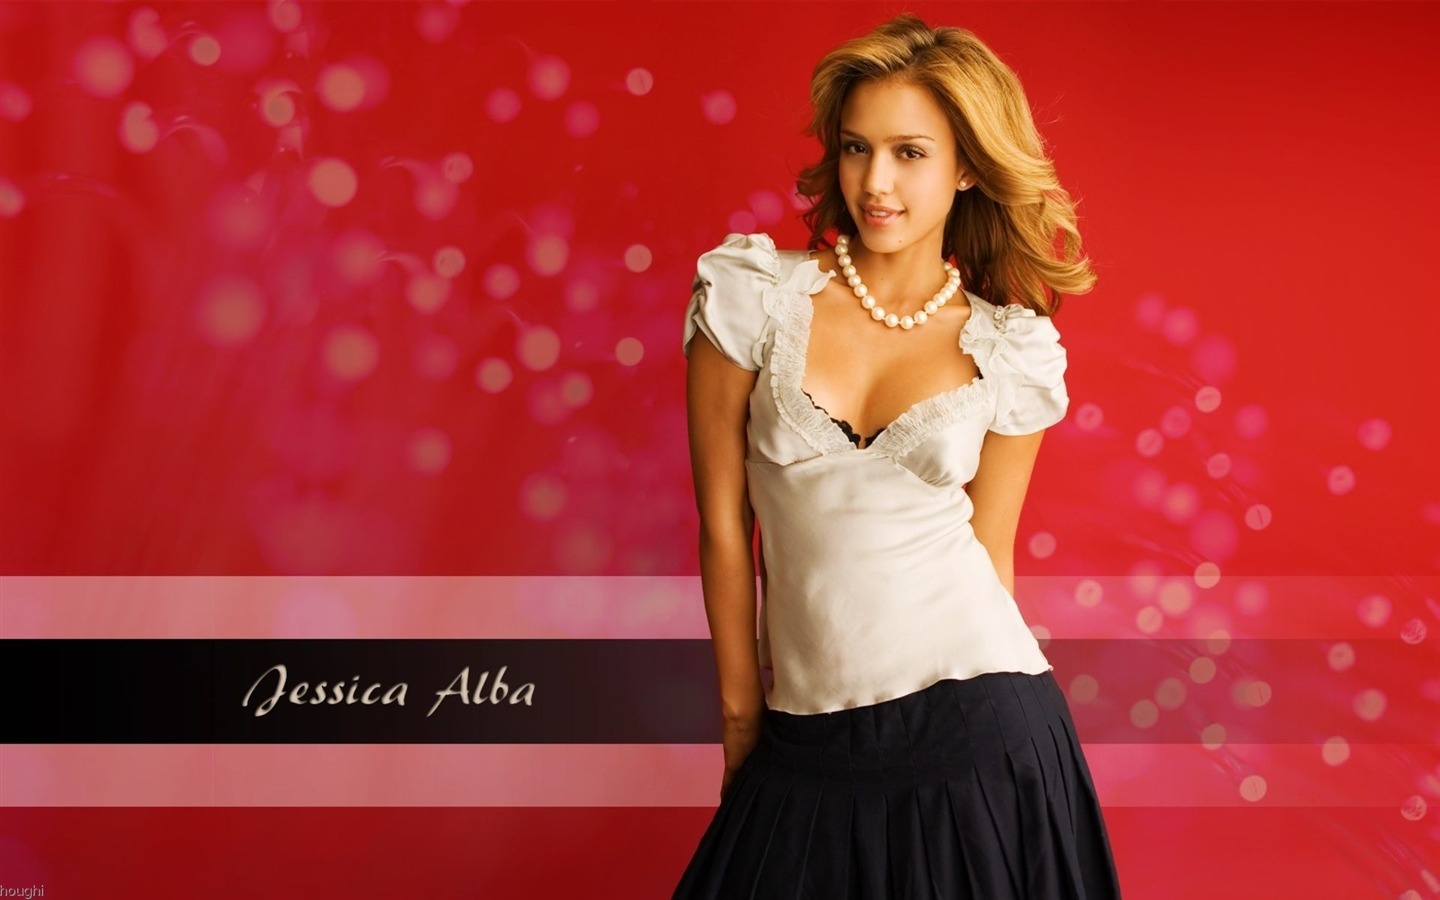 Jessica Alba beautiful wallpaper (8) #18 - 1440x900